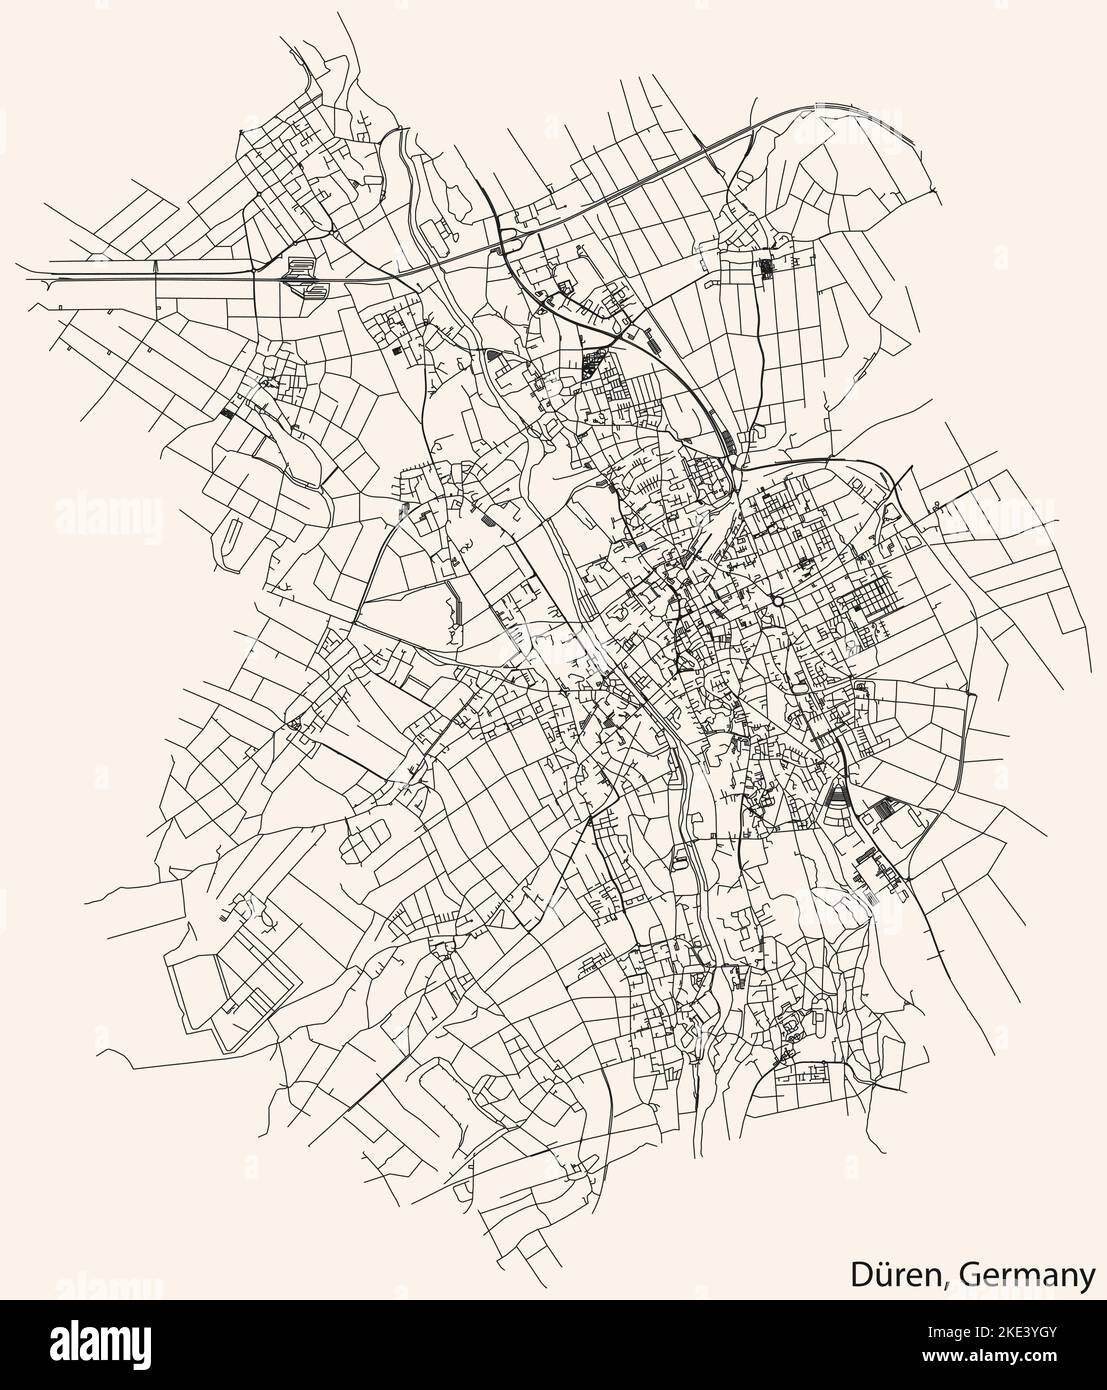 Navigation détaillée lignes noires rues urbaines carte de la capitale régionale allemande de DÜREN, ALLEMAGNE sur fond beige vintage Illustration de Vecteur